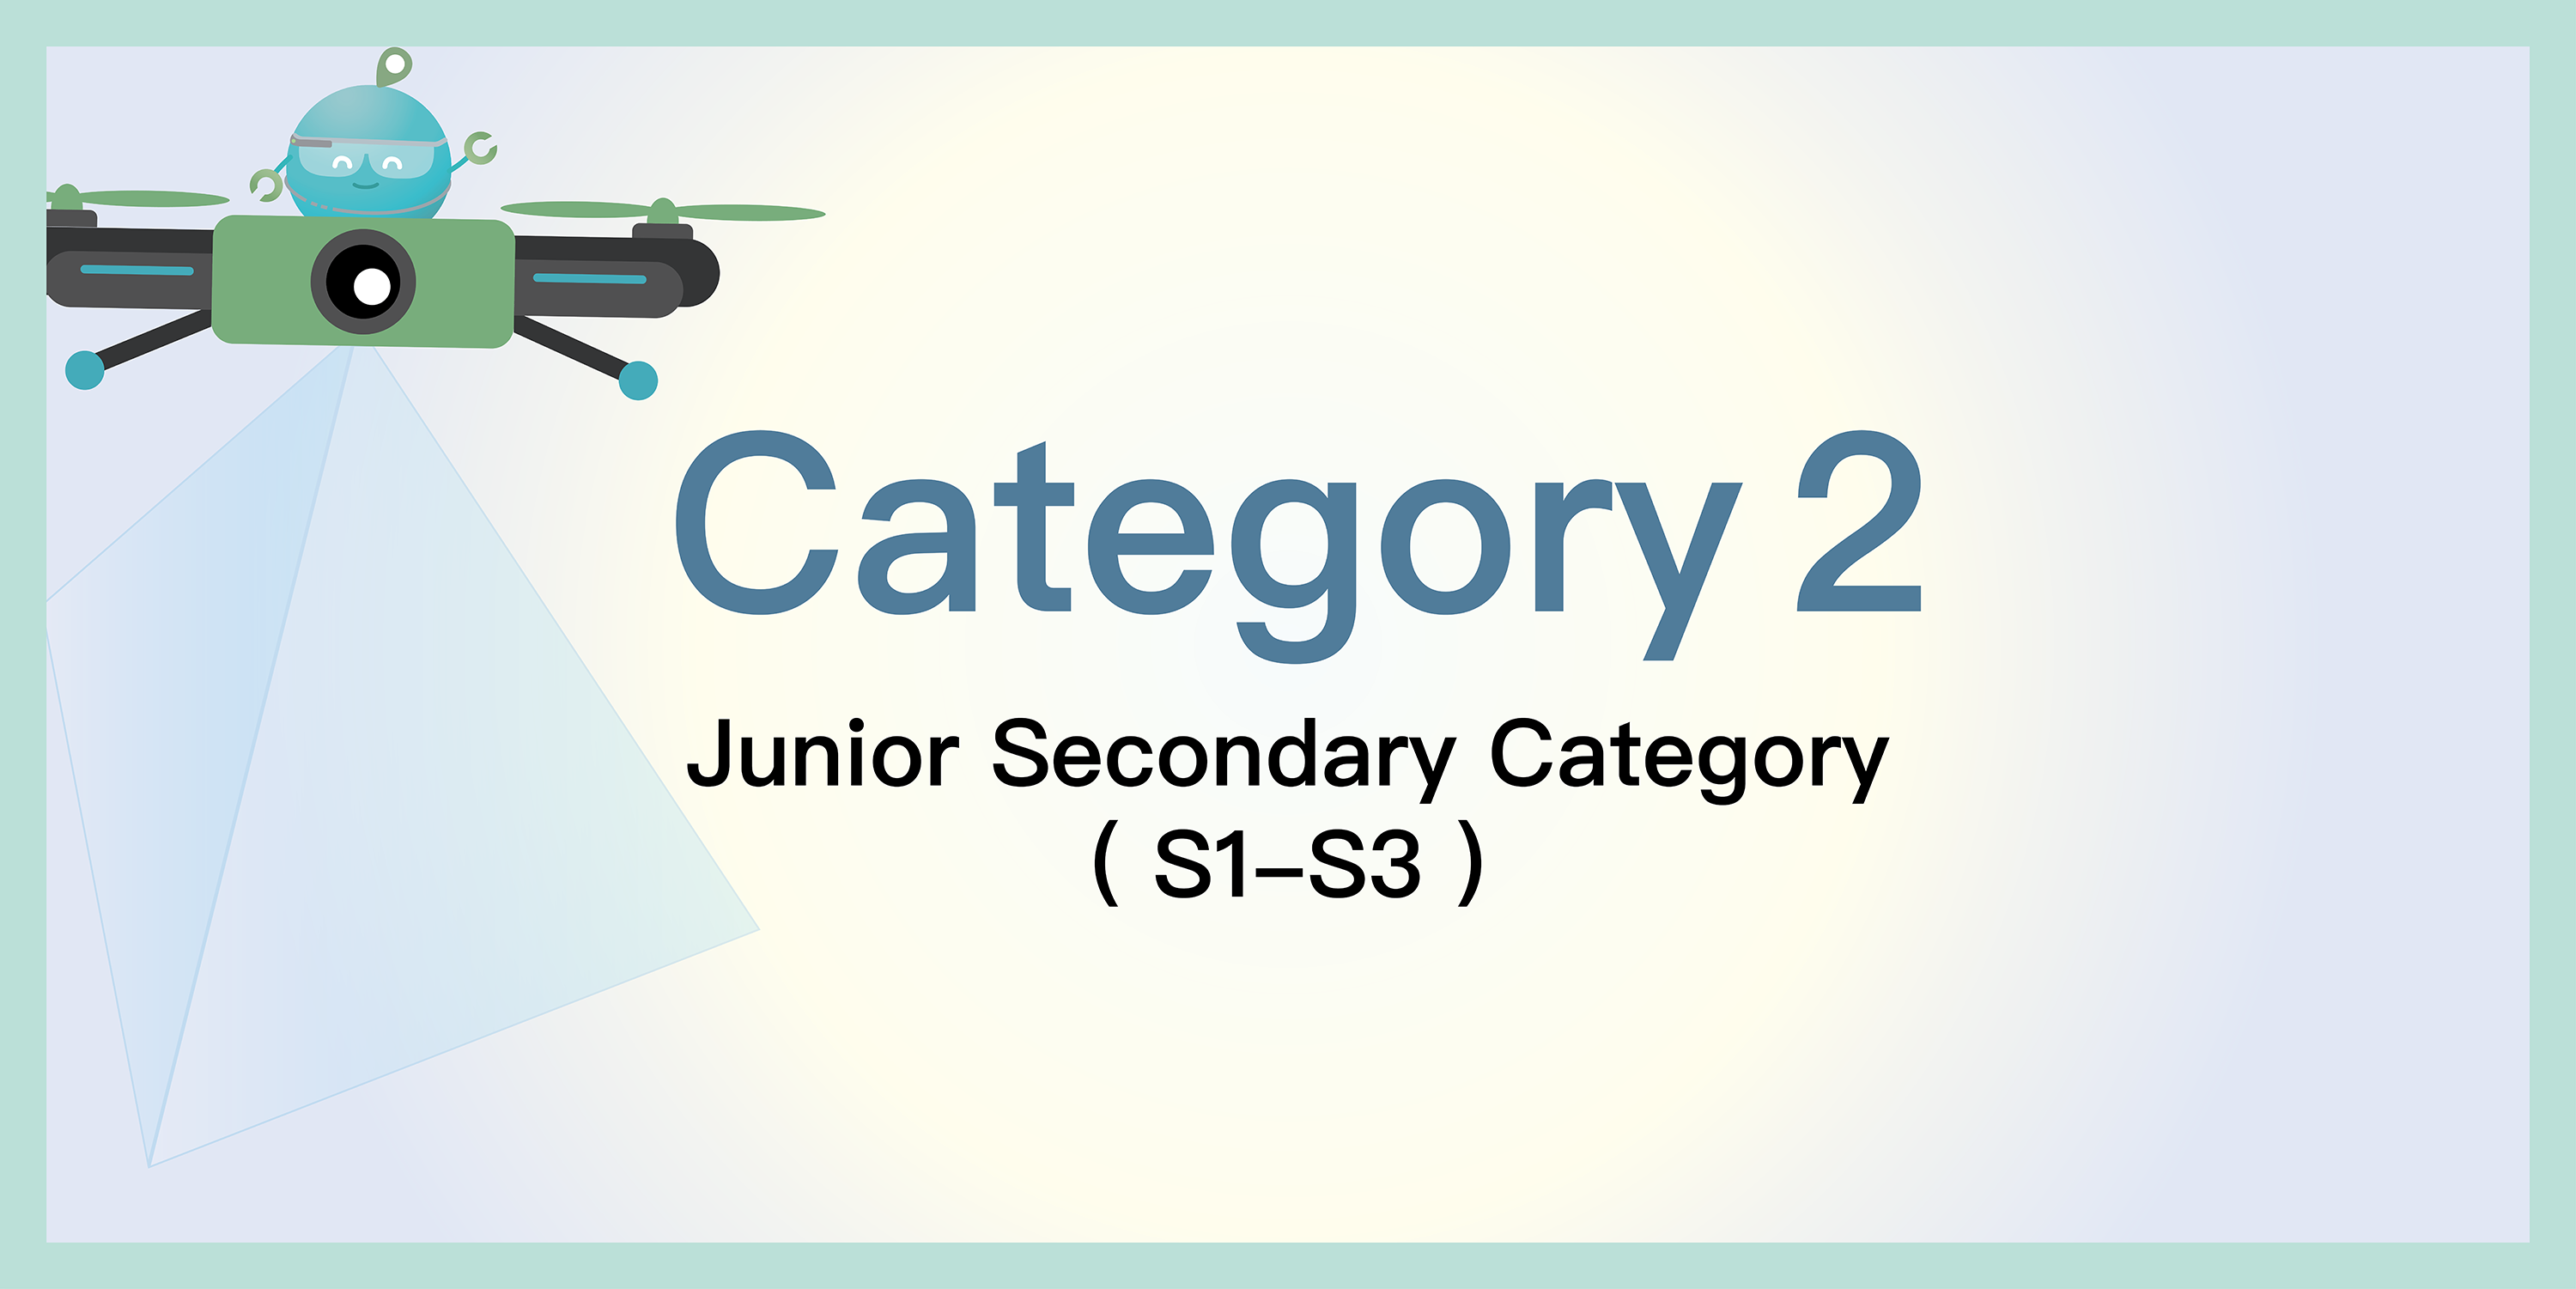 Junior Secondary Category